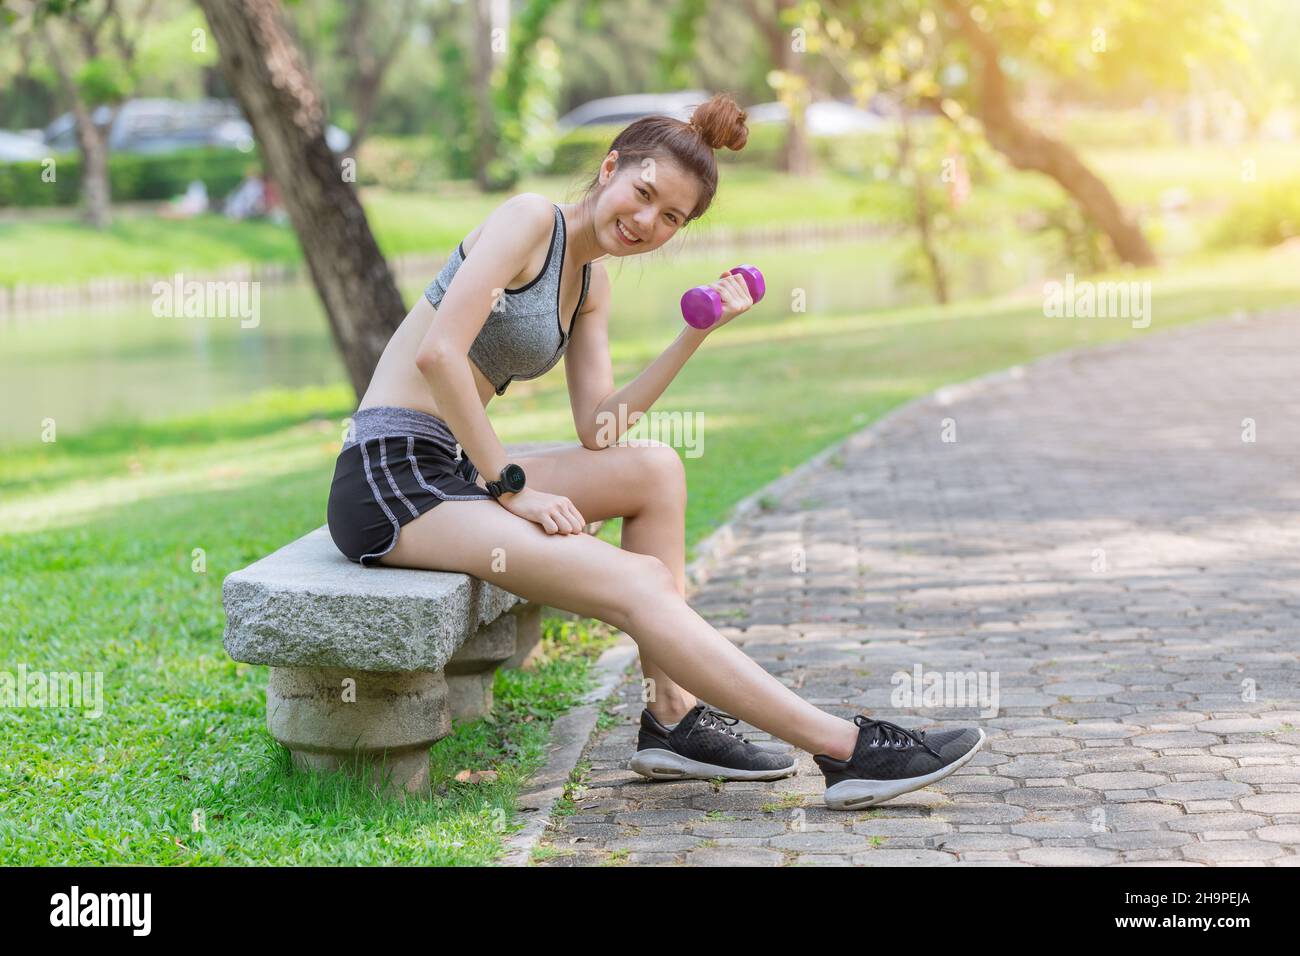 Snellente donne sane in abbigliamento sportivo teen cute Happy Godetevi in forma e peso fermo nel parco Foto Stock